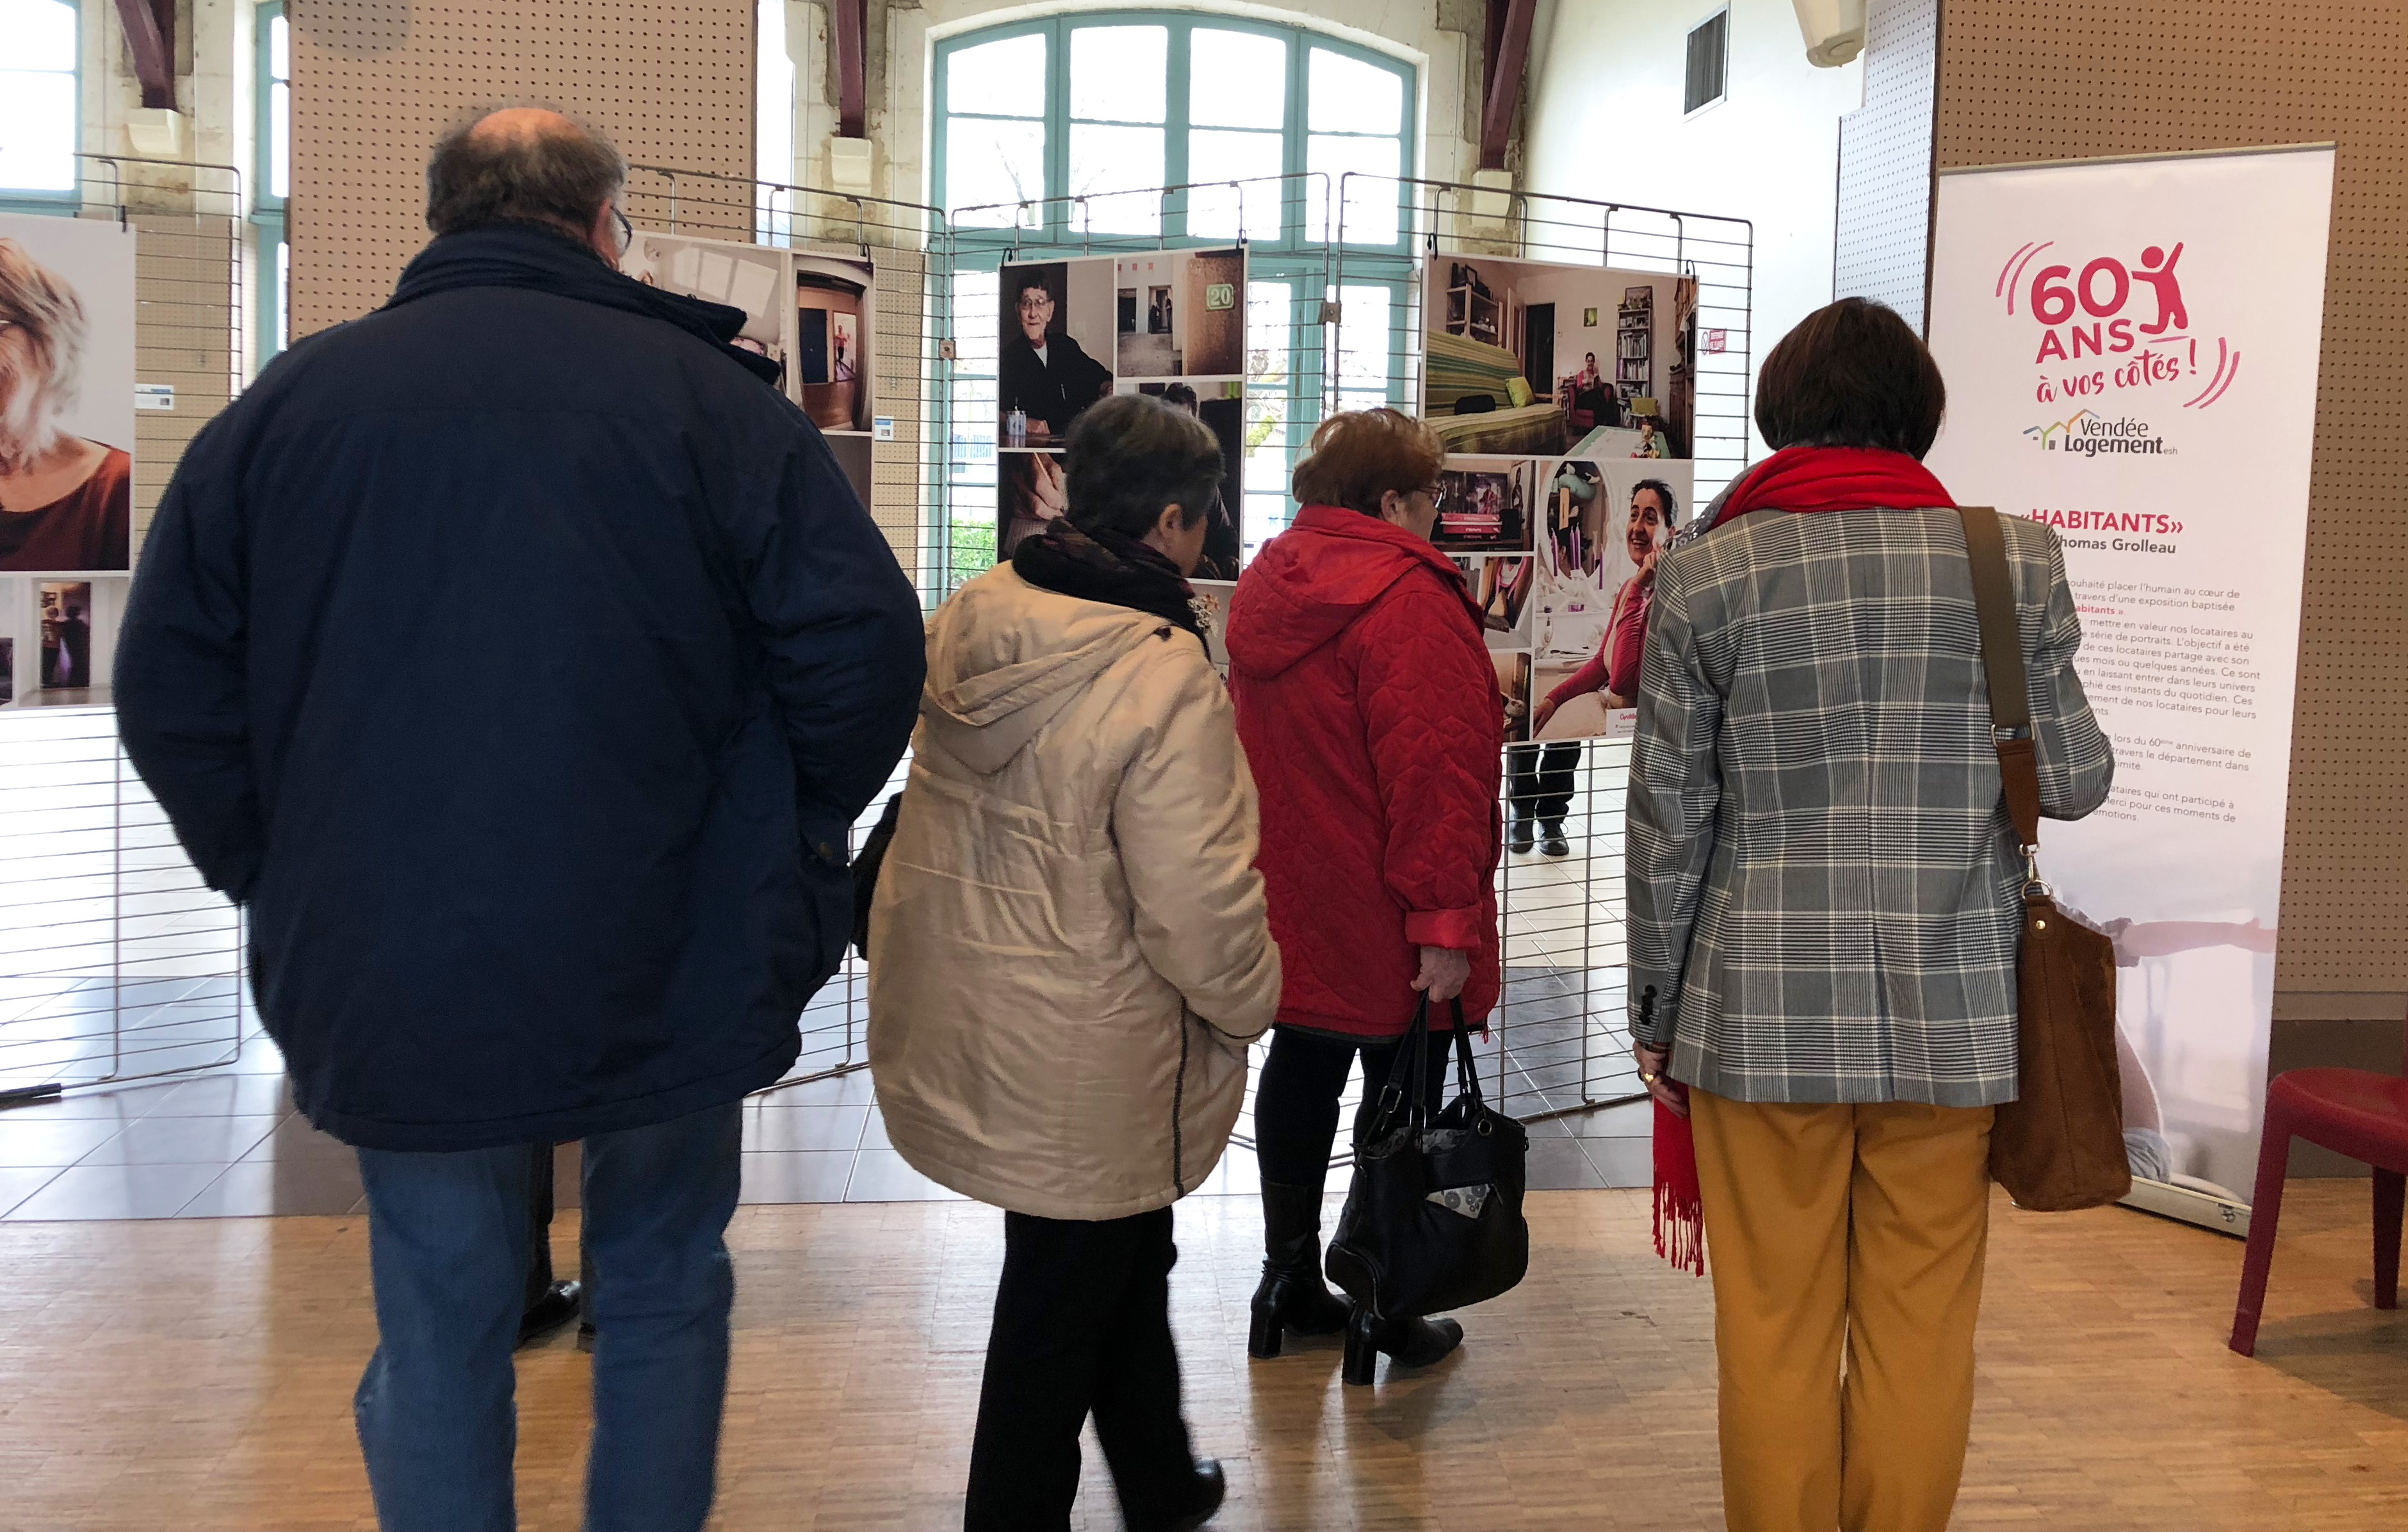 Les locataires de Fontenay-le-Comte découvrent l’exposition « Habitants »